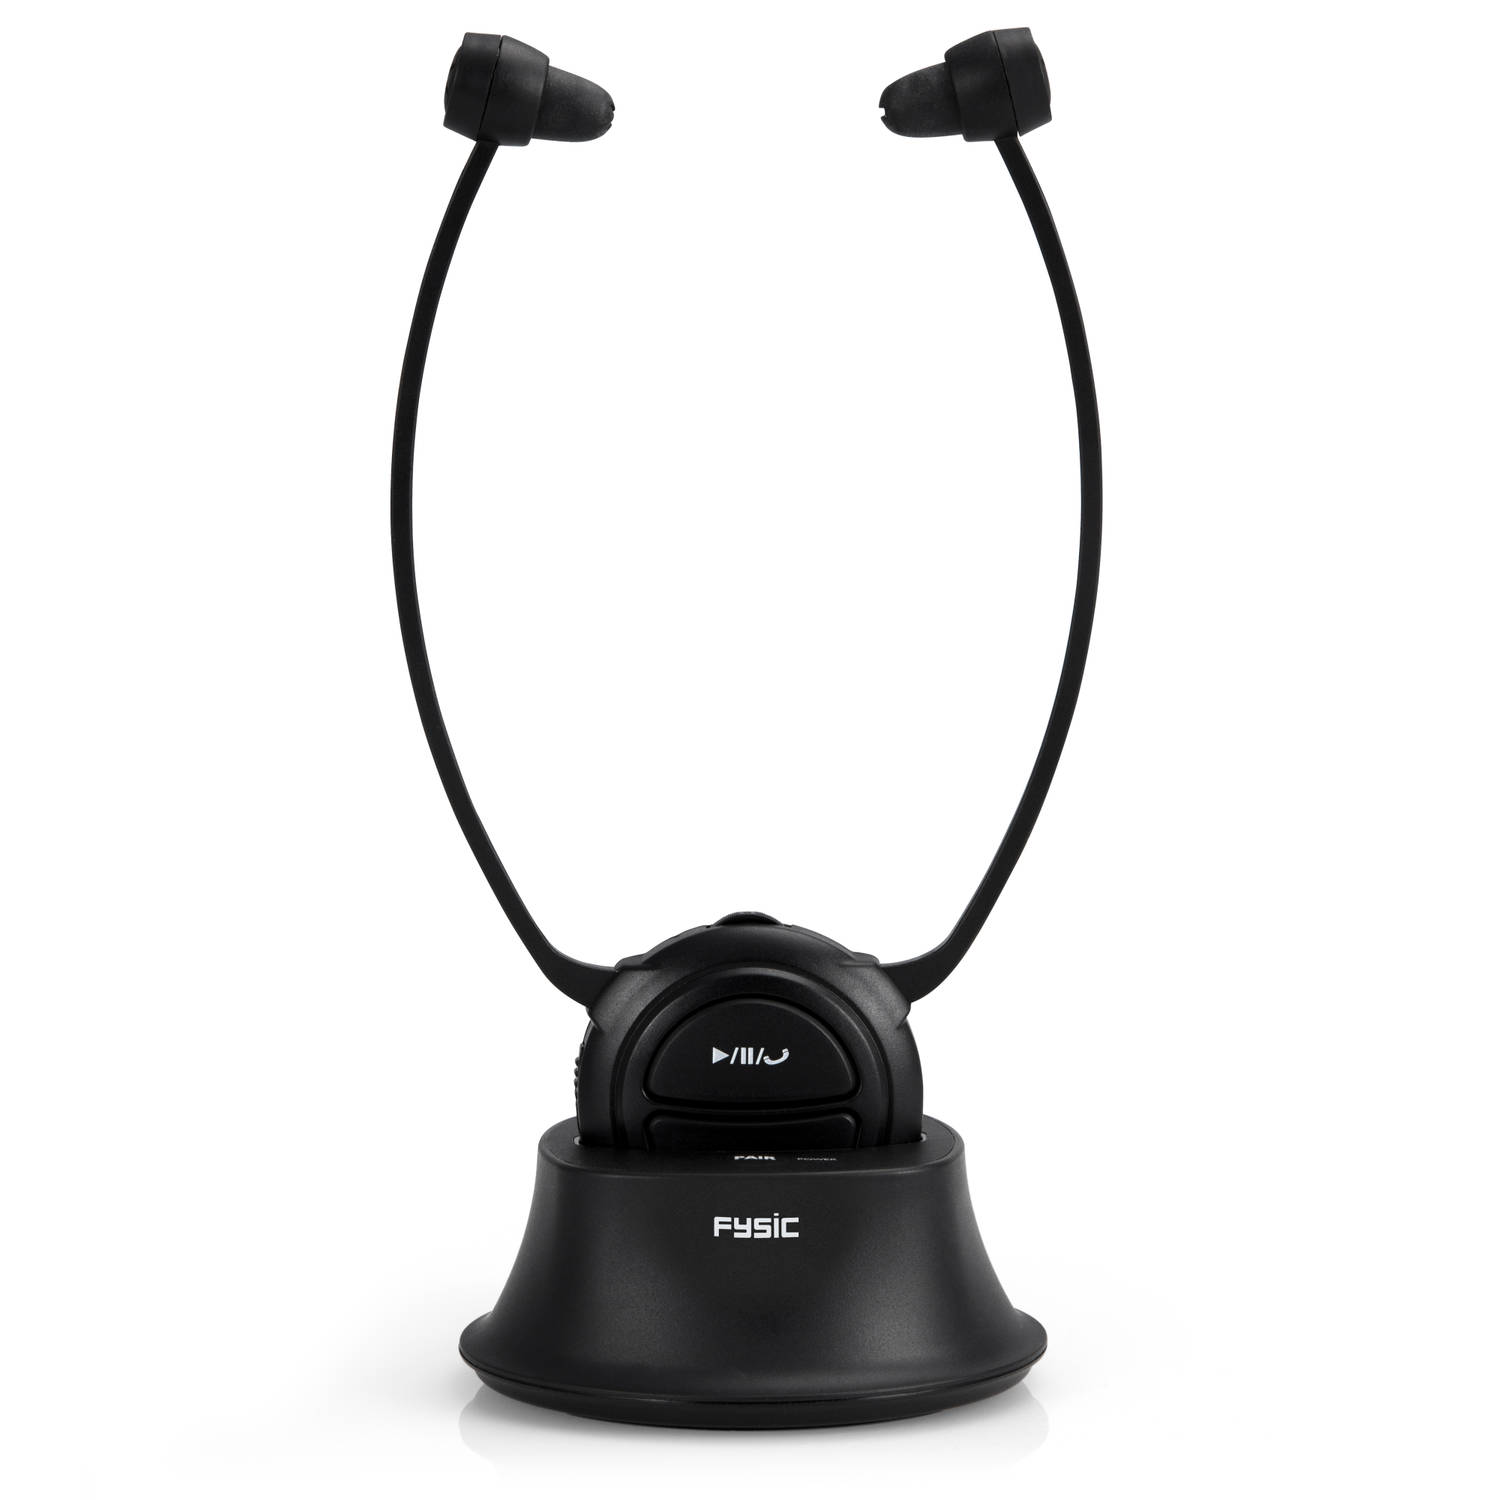 Draadloze gehoorversterker/hoofdtelefoon Fysic FH-76 Zwart